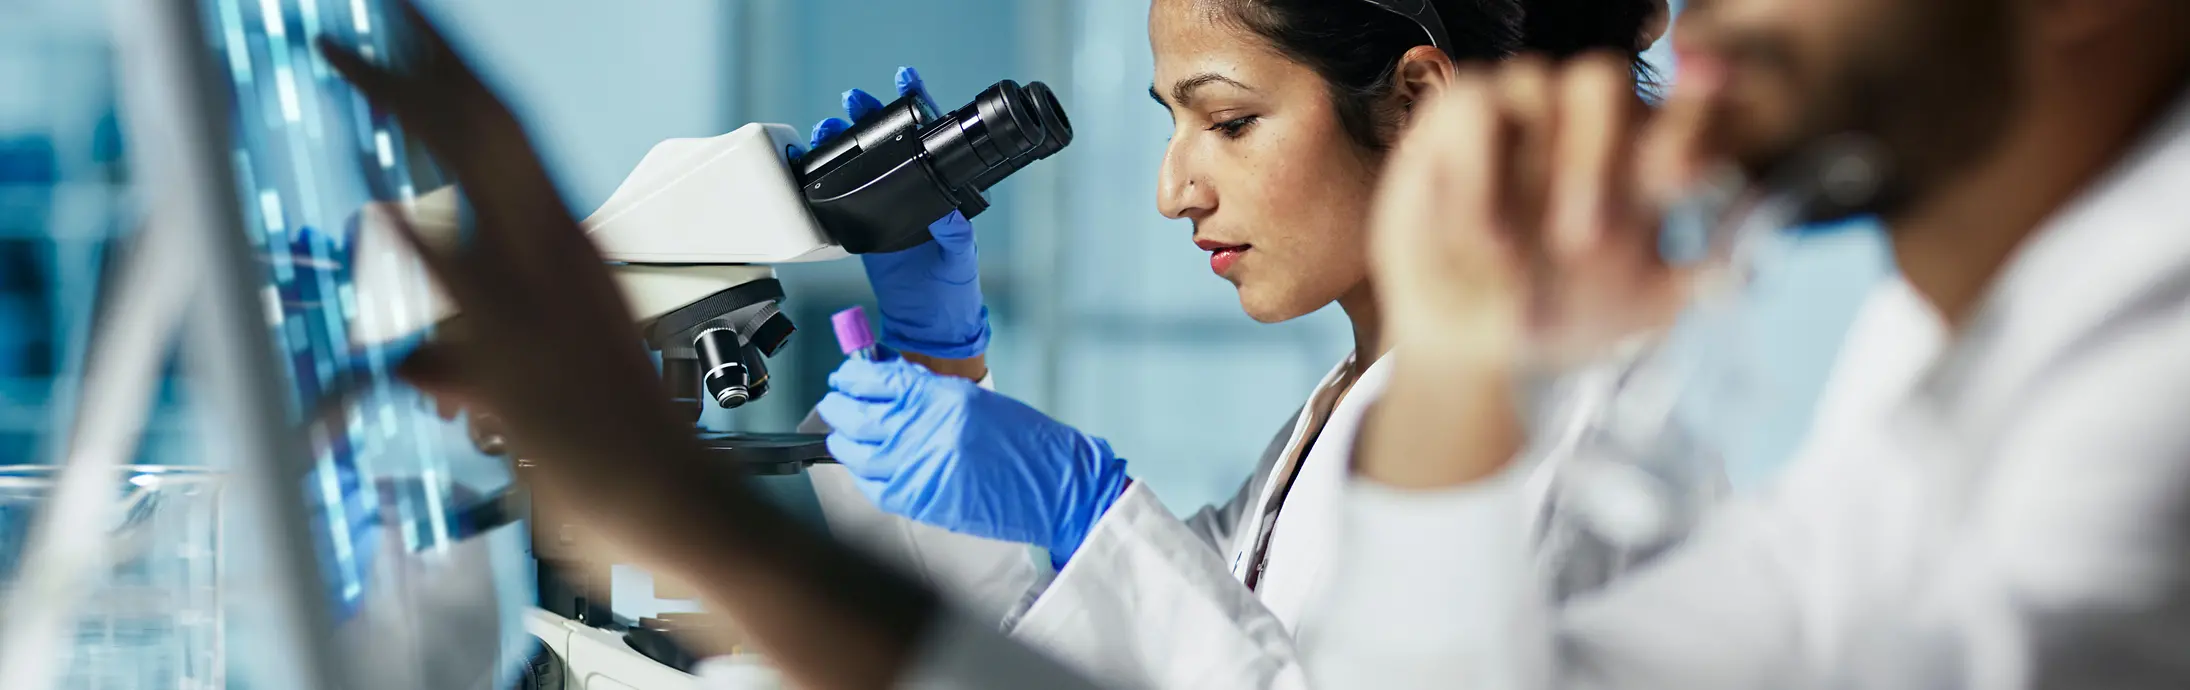 žena koja u laboratoriju sjedi i gleda uzorak kroz mikroskop; ispred nje je muškarac s bradom koji gleda u zaslon 